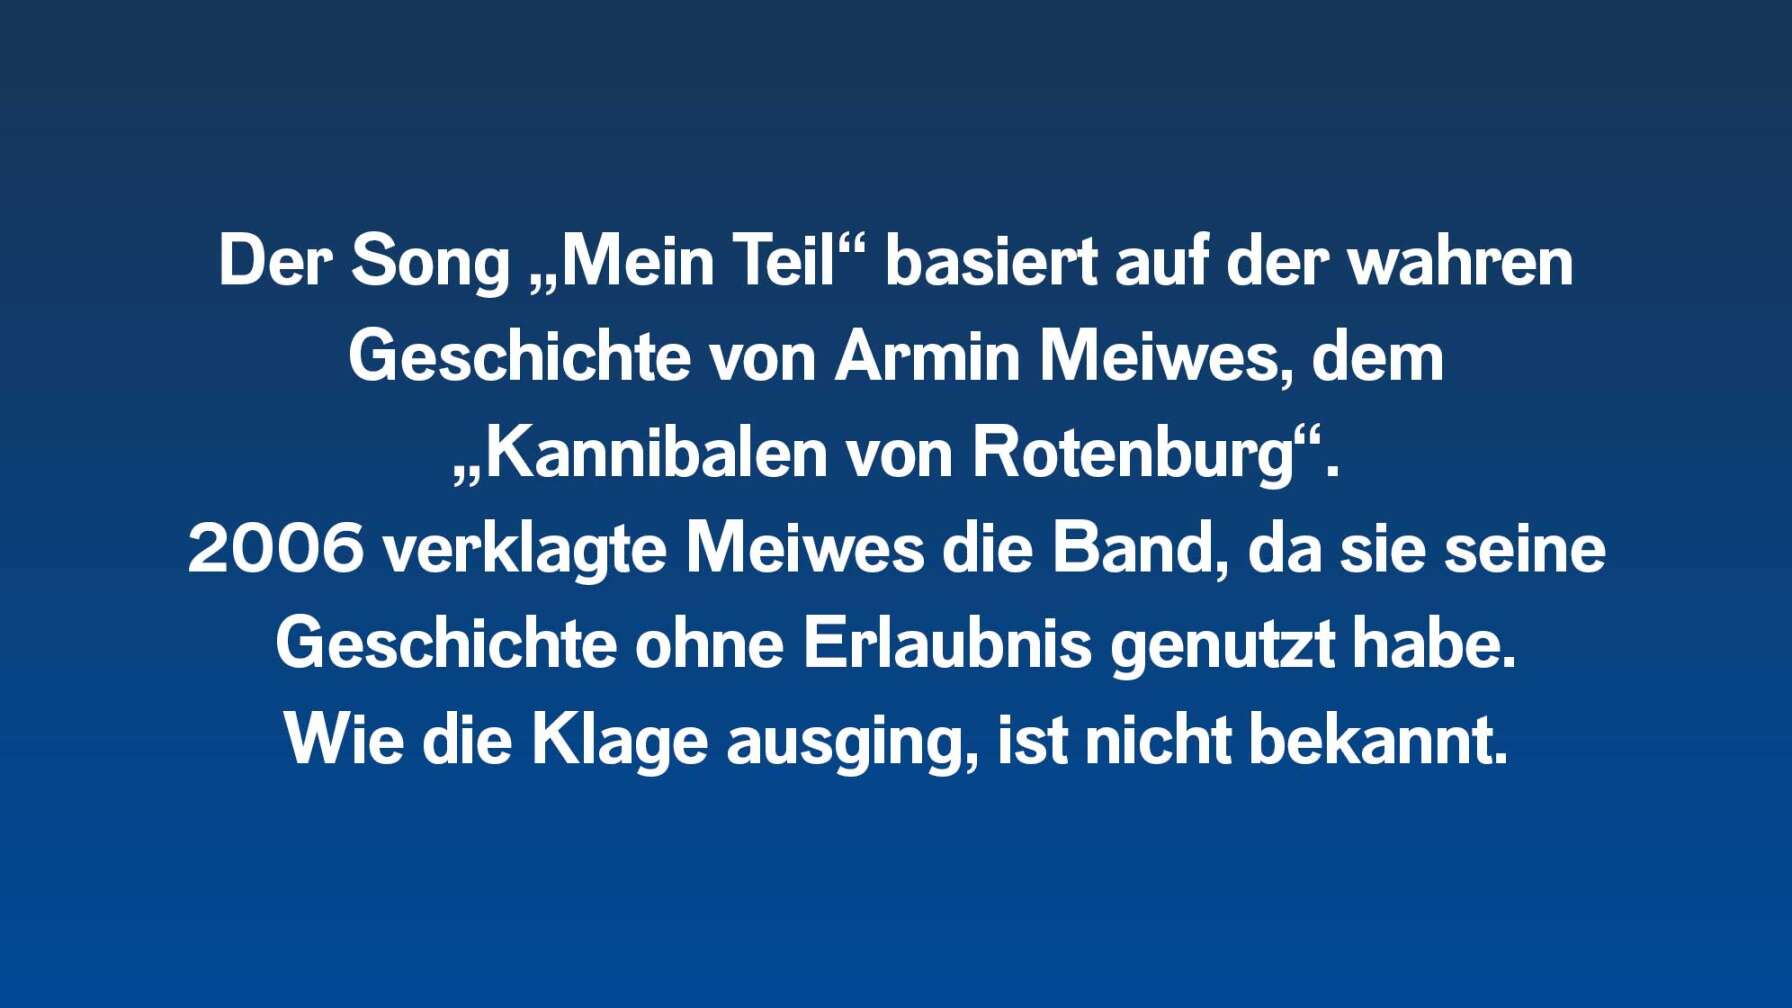 Der Song „Mein Teil“ basiert auf der wahren Geschichte von Armin Meiwes, dem „Kannibalen von Rotenburg“. 2006 verklagte Meiwes Rammstein darauf, dass die Band seine persönliche Geschichte unerlaubt benutzt habe. Wie die Klage ausging, ist unbekannt.